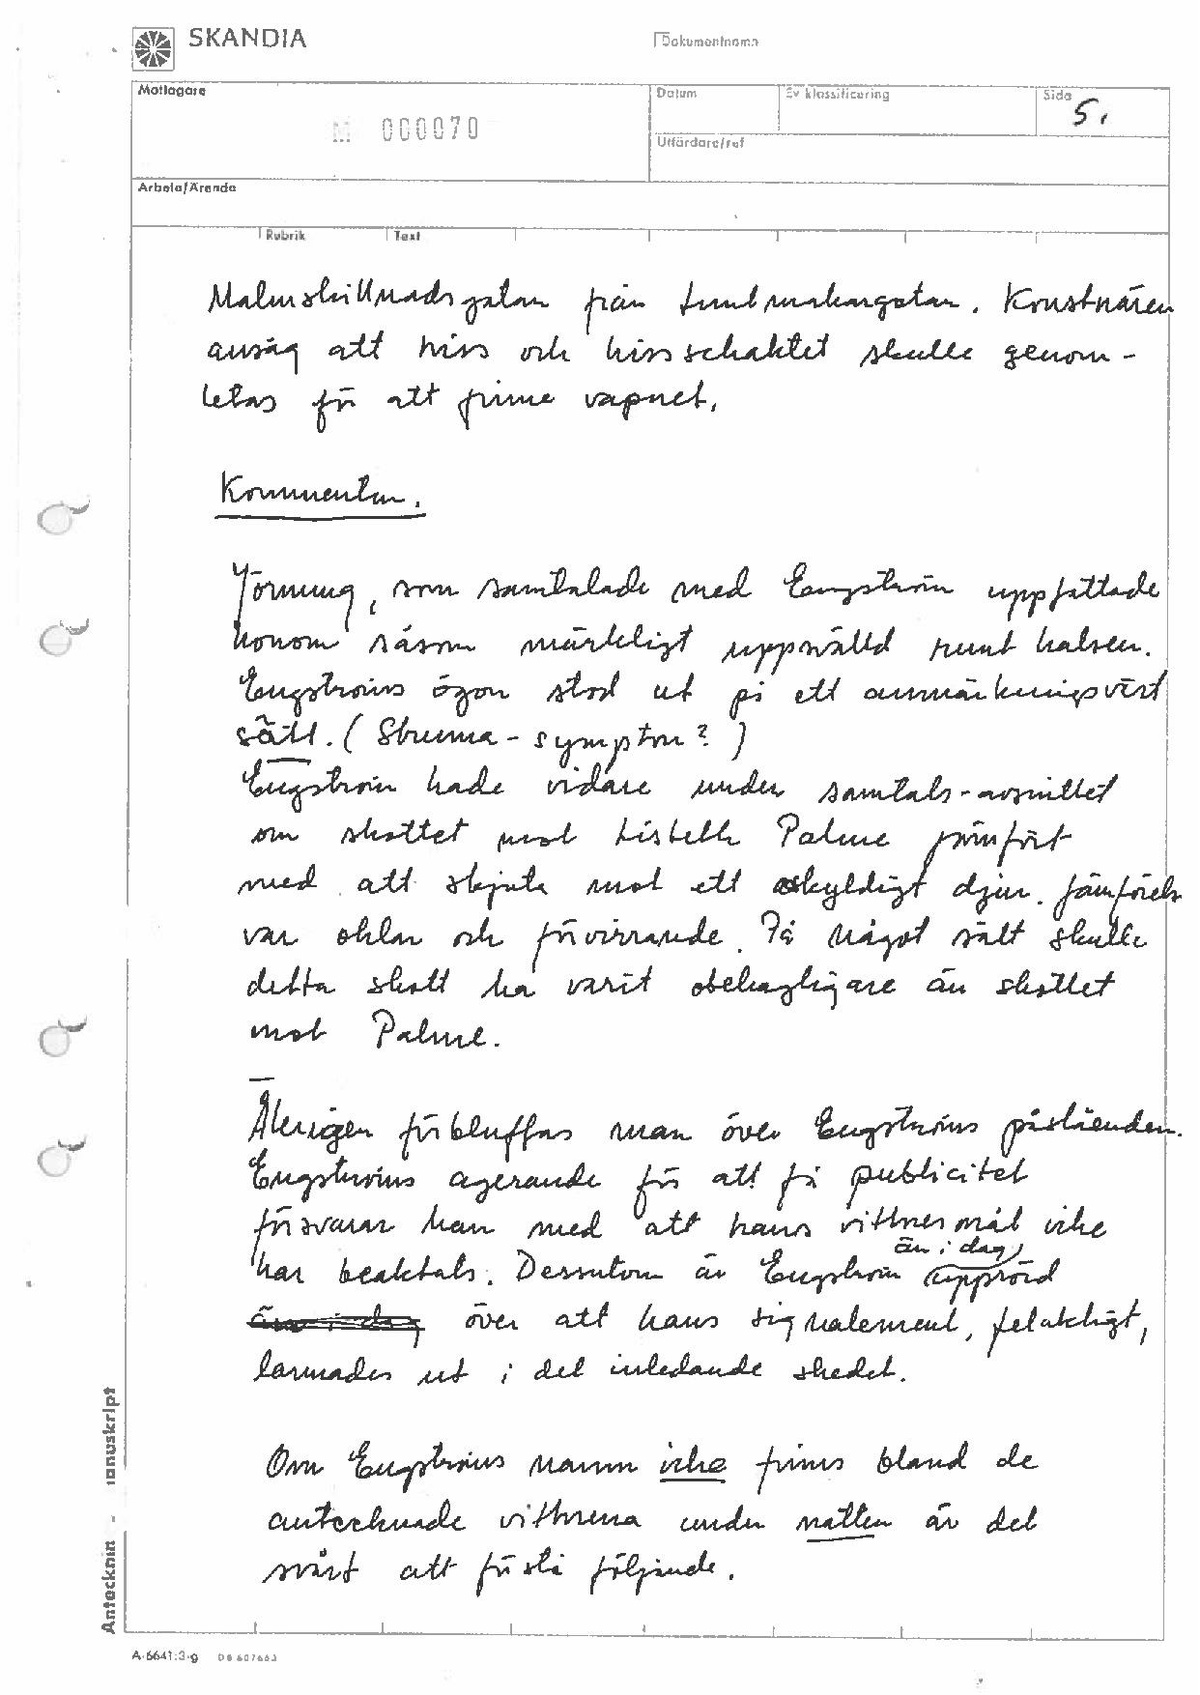 Pol-1987-02-06 OKÄND UPPSLAGSKOD PH-PM-6-feb-1987.pdf